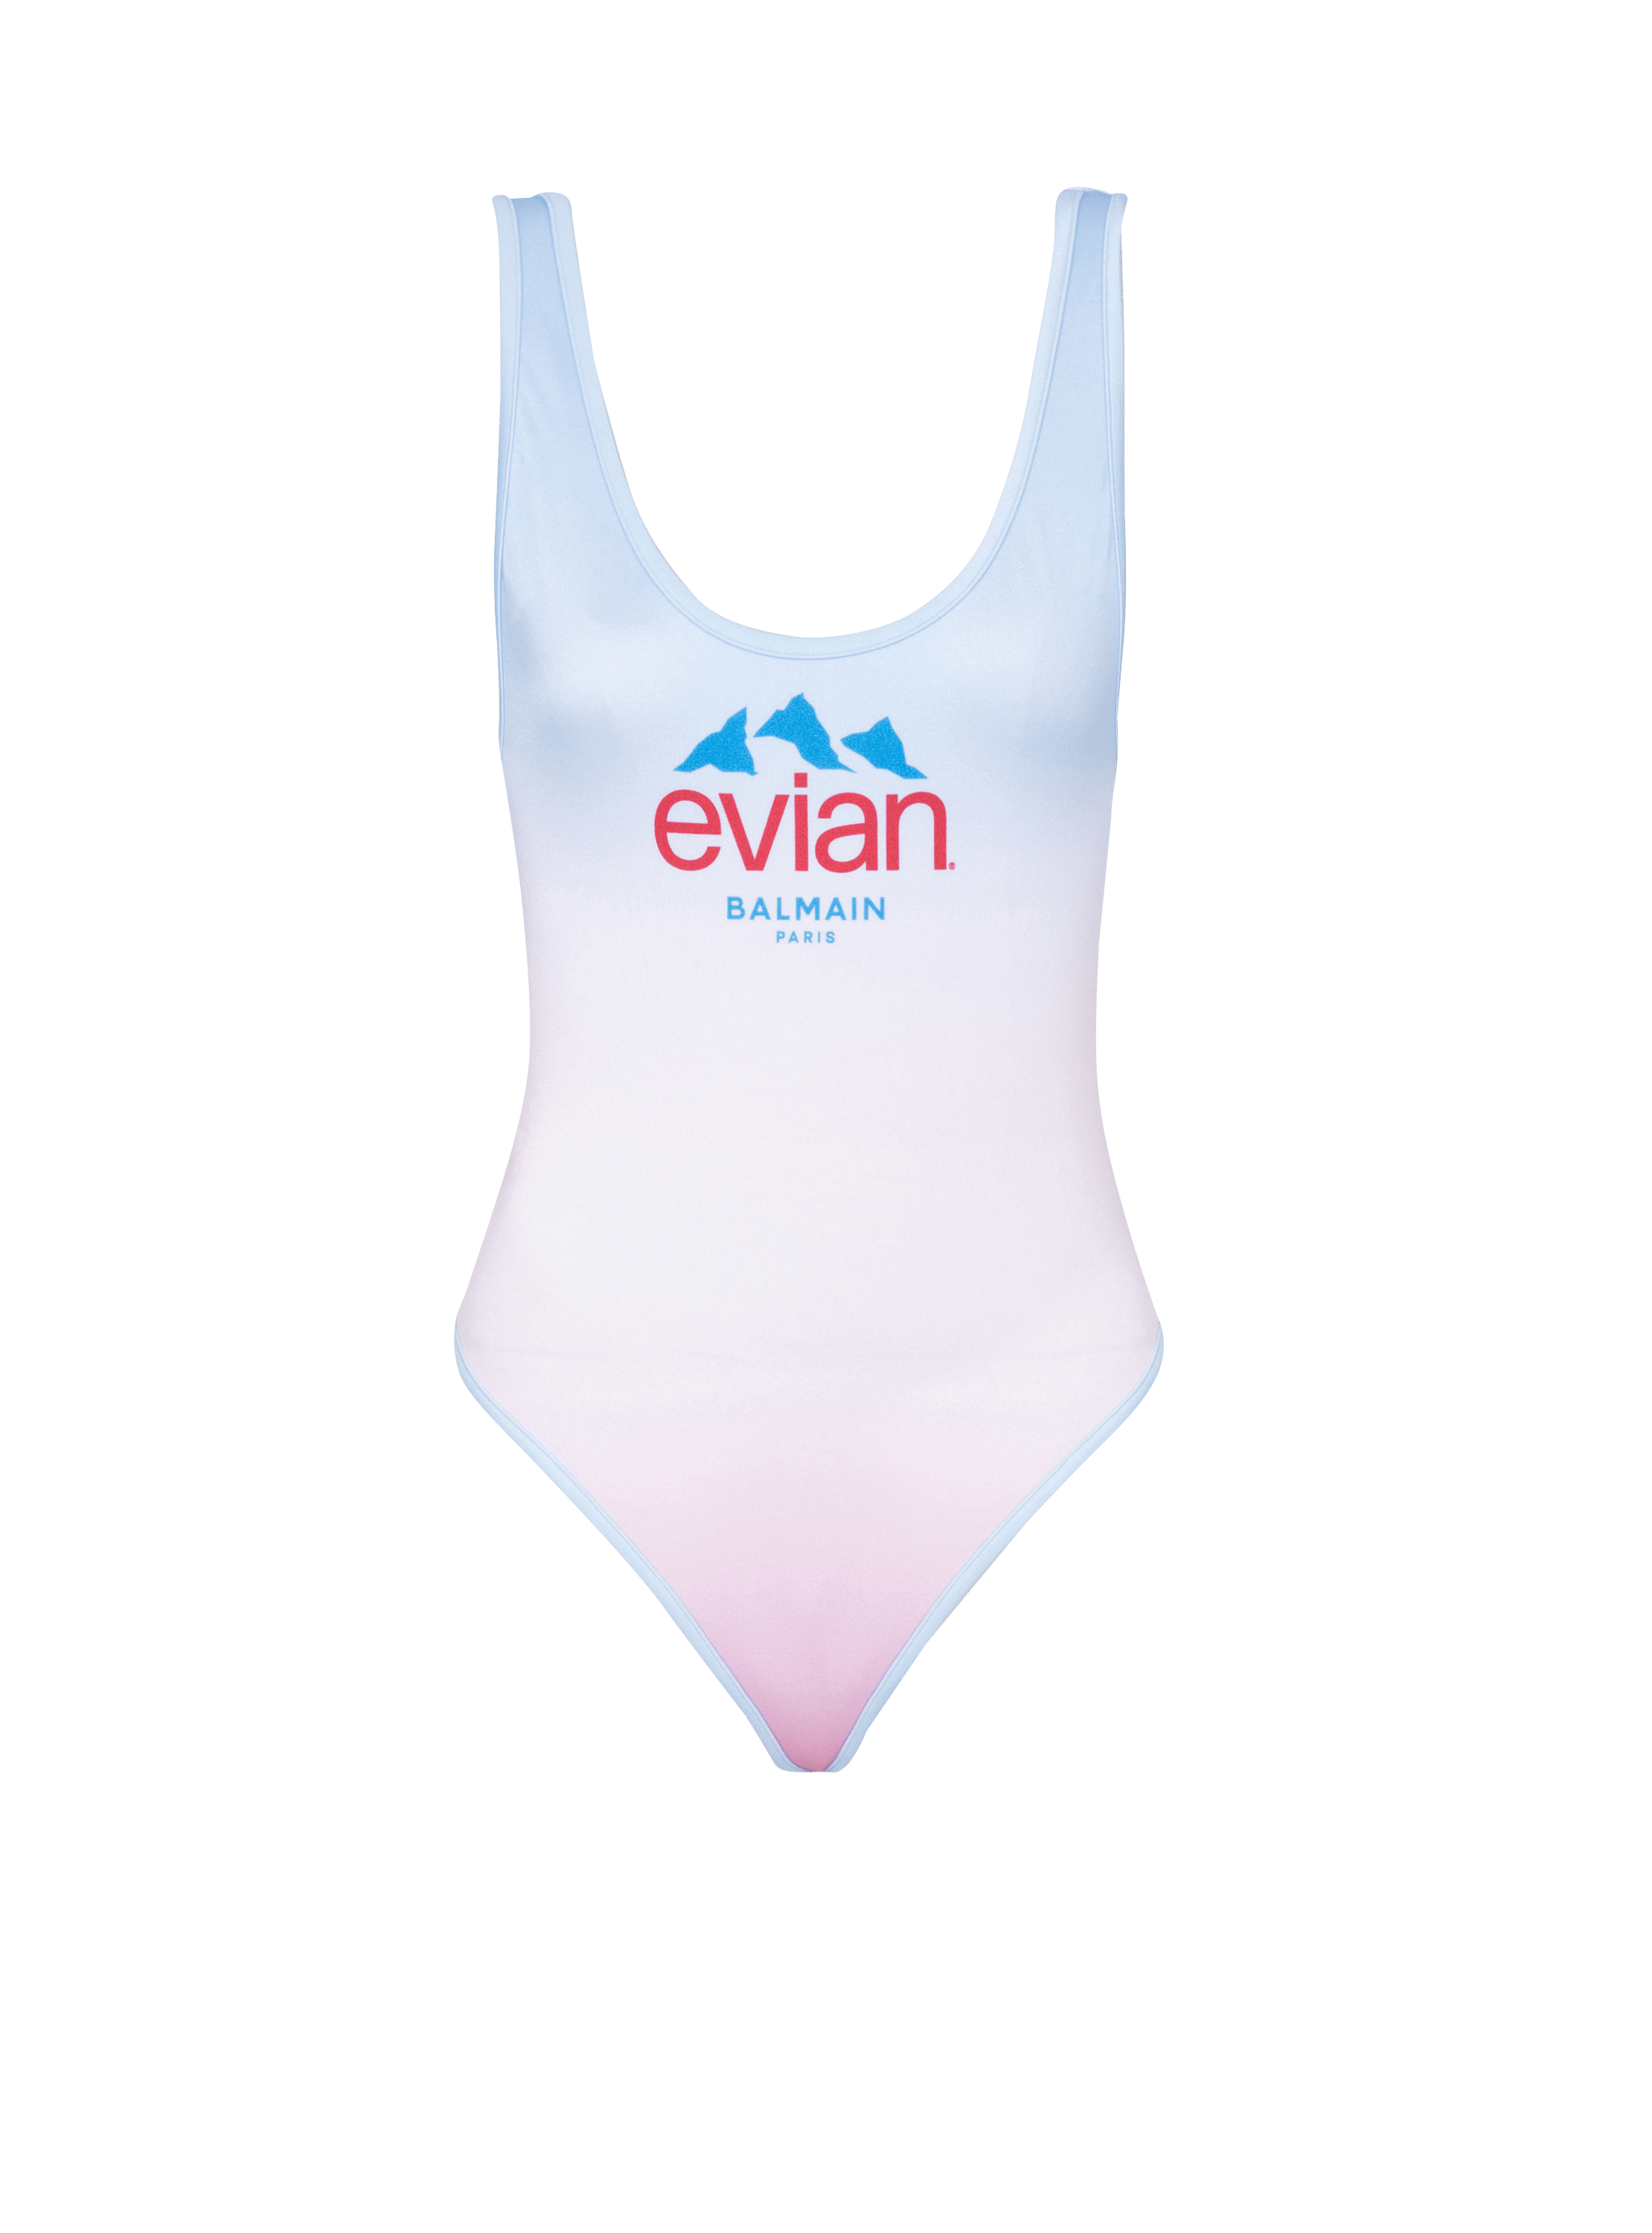 Balmain x Evian - Maillot de bain